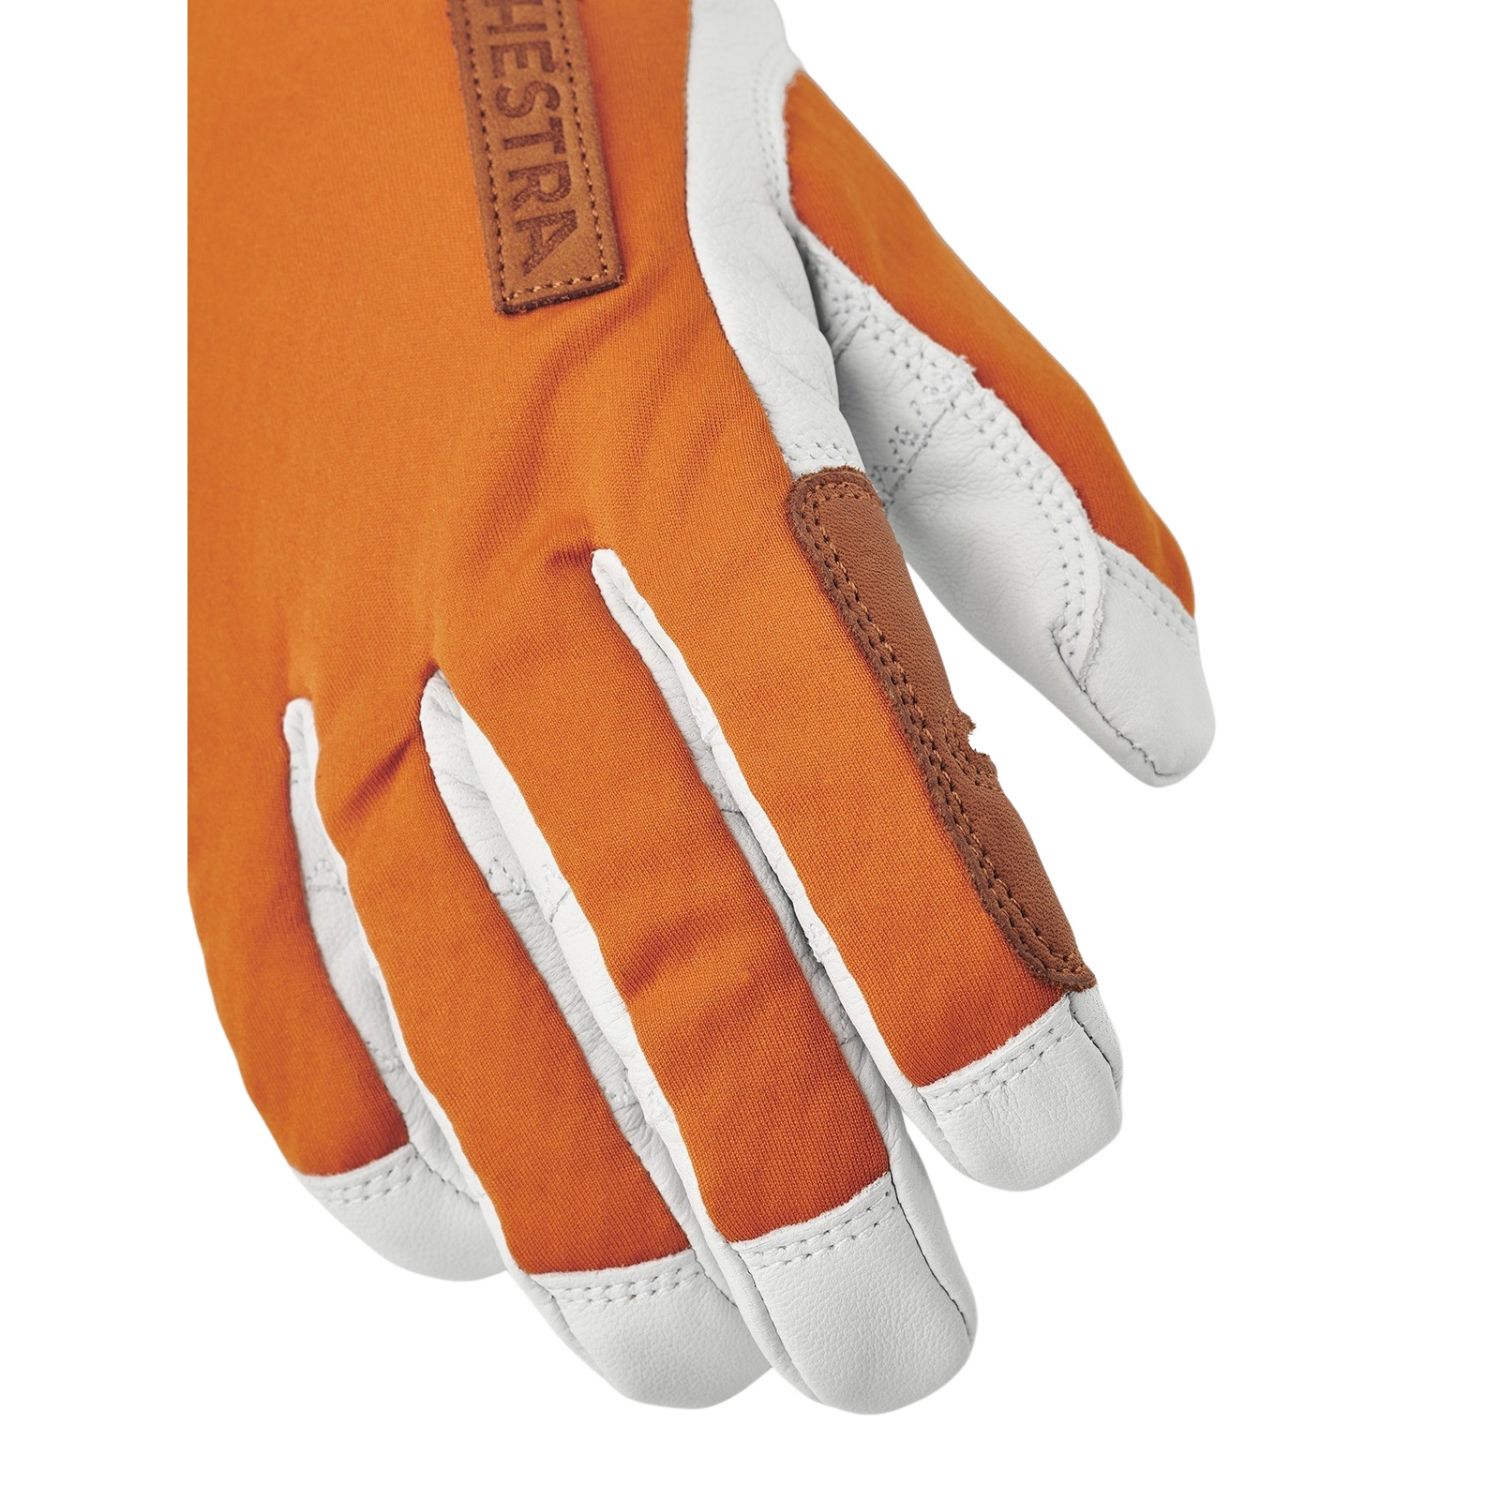 Hestra Ergo Grip Active Wool Terry, gants, orange/blanc